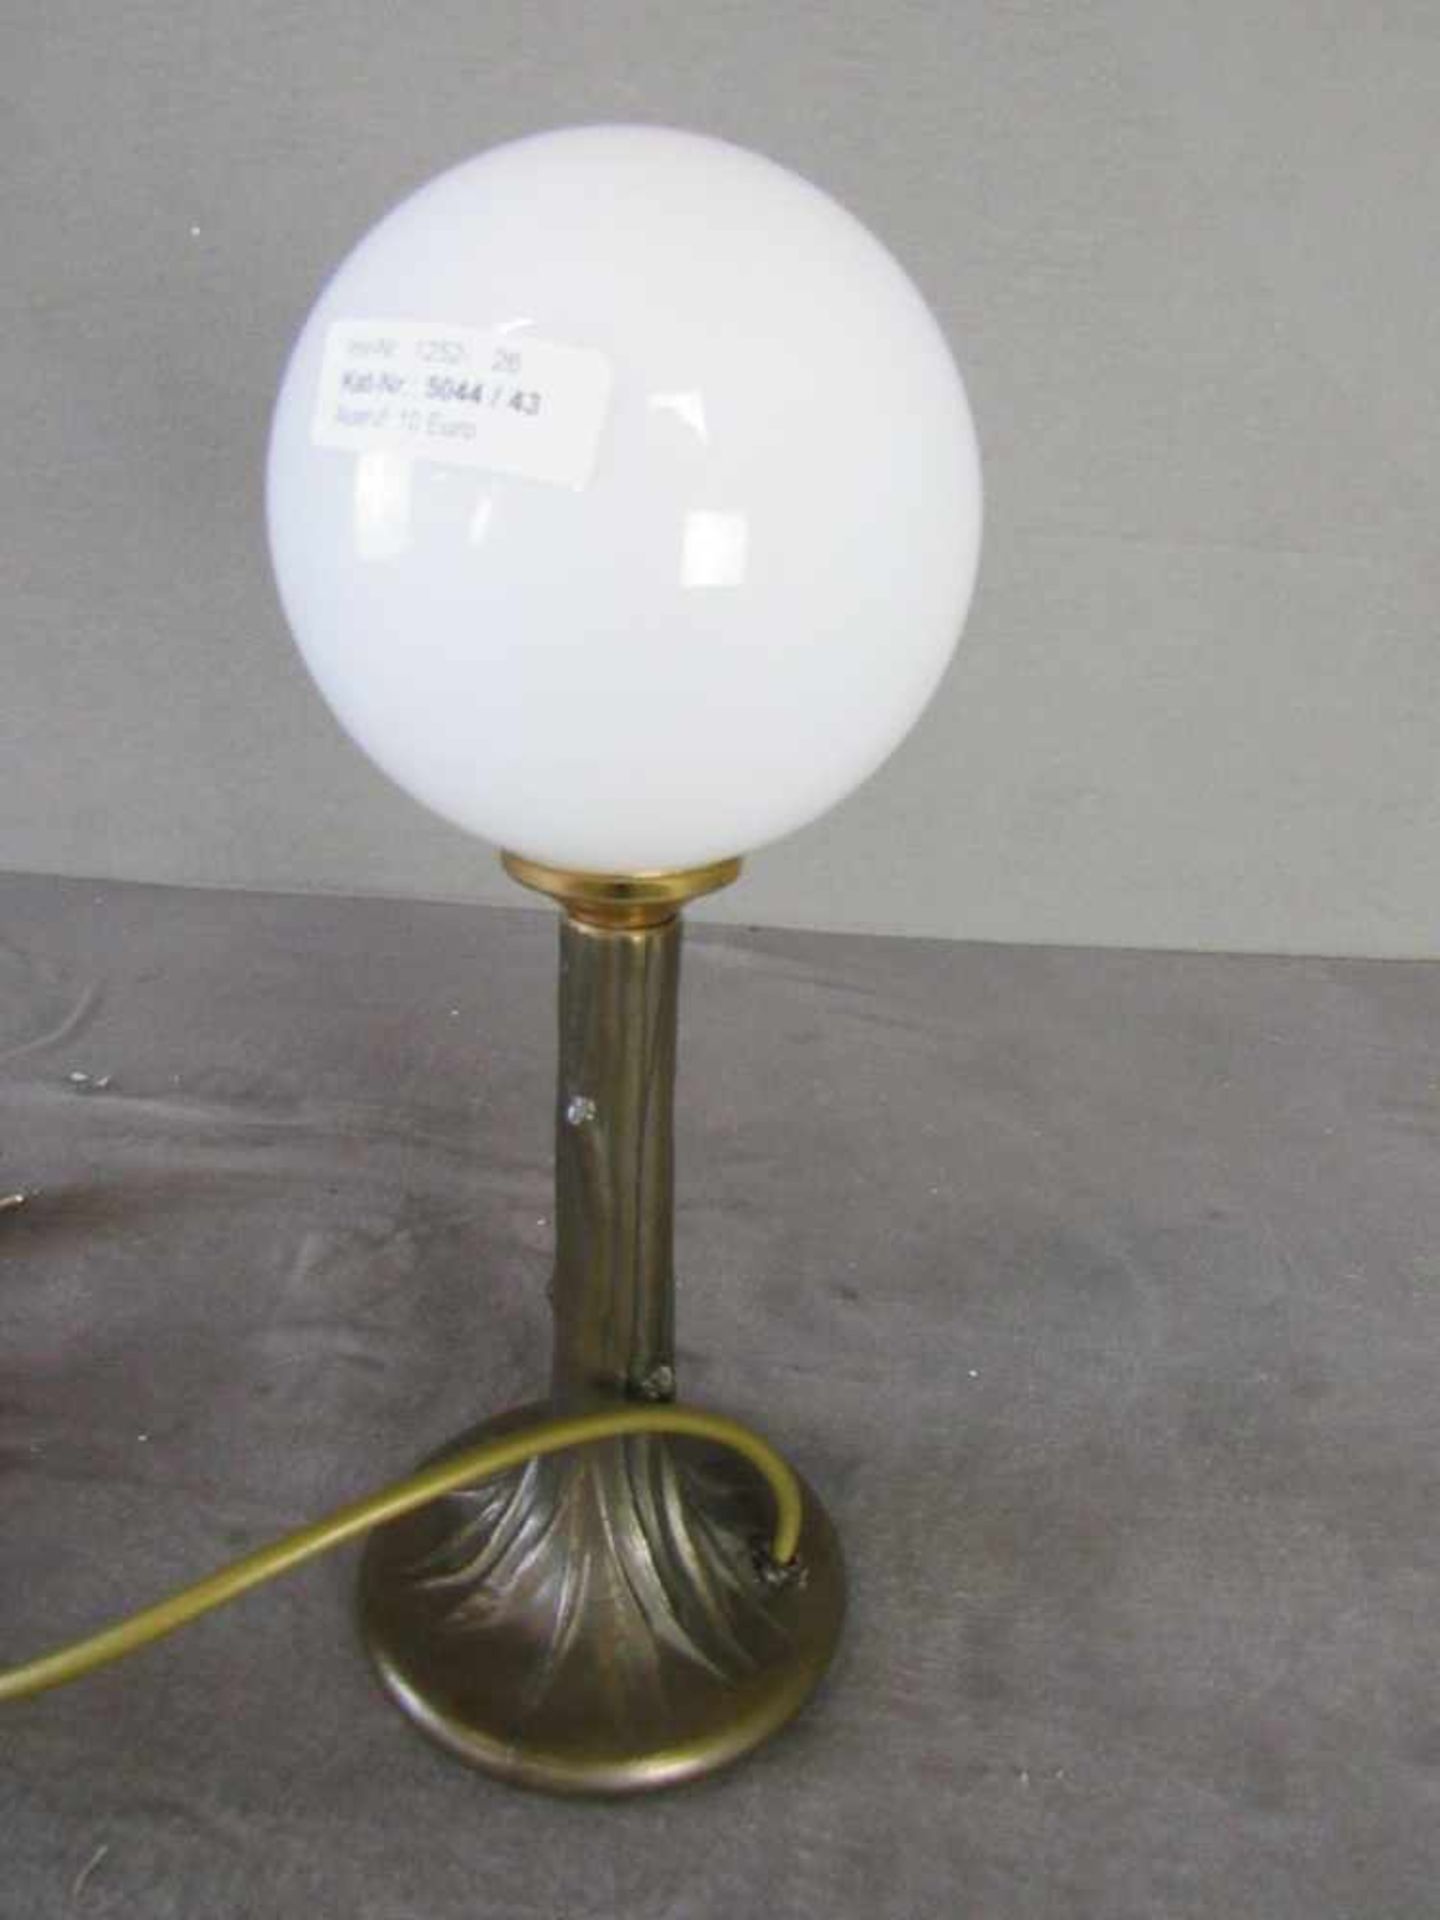 Tischlampe in schöner Jugendstilmanier funktionstüchtig 34cm hoch- - -20.00 % buyer's premium on the - Image 2 of 2